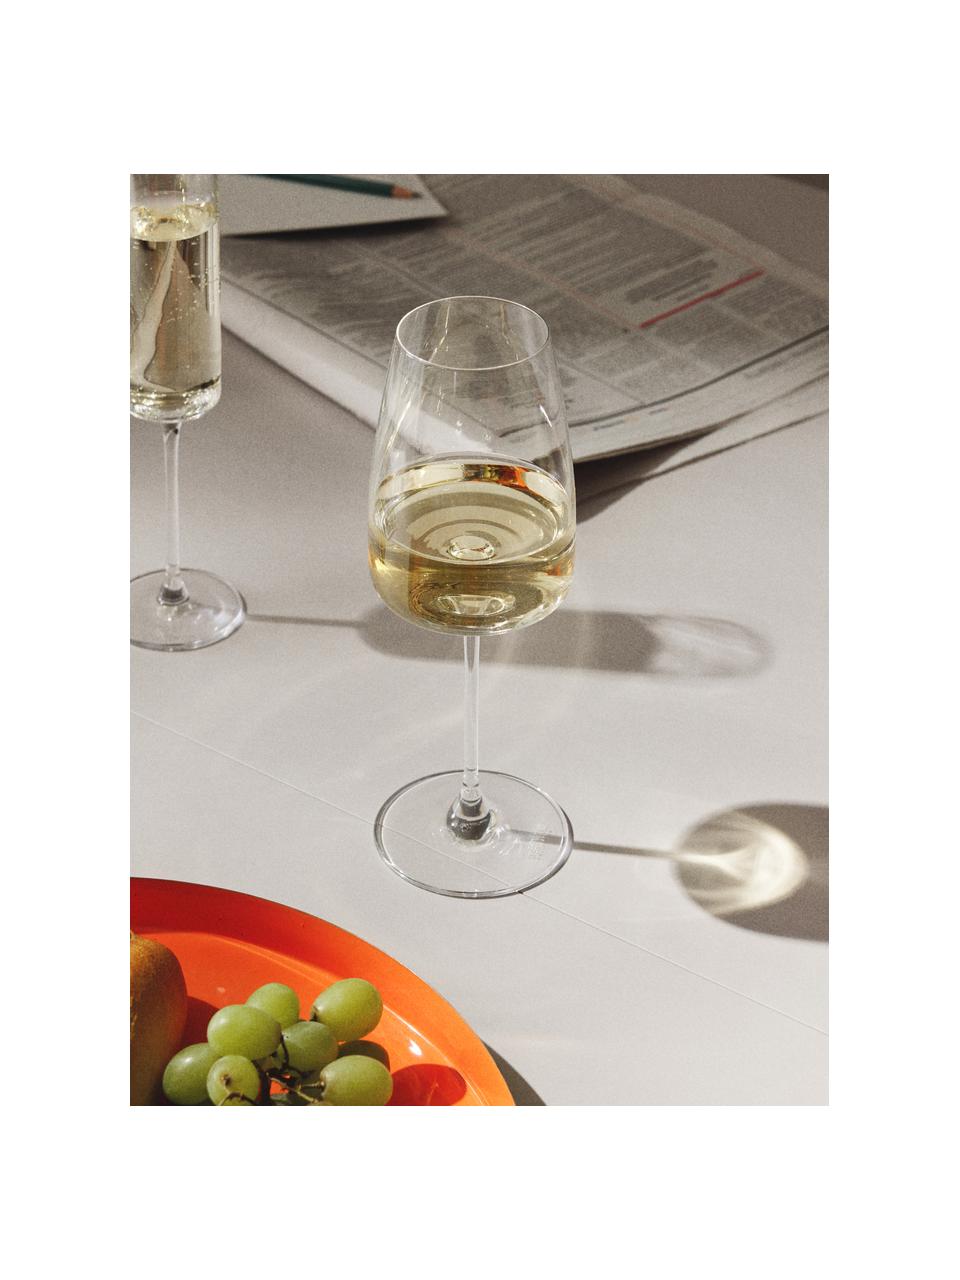 Calici da vino bianco in cristallo Lucien 4 pz, Cristallo, Trasparente, Ø 8 x Alt. 22 cm, 420 ml